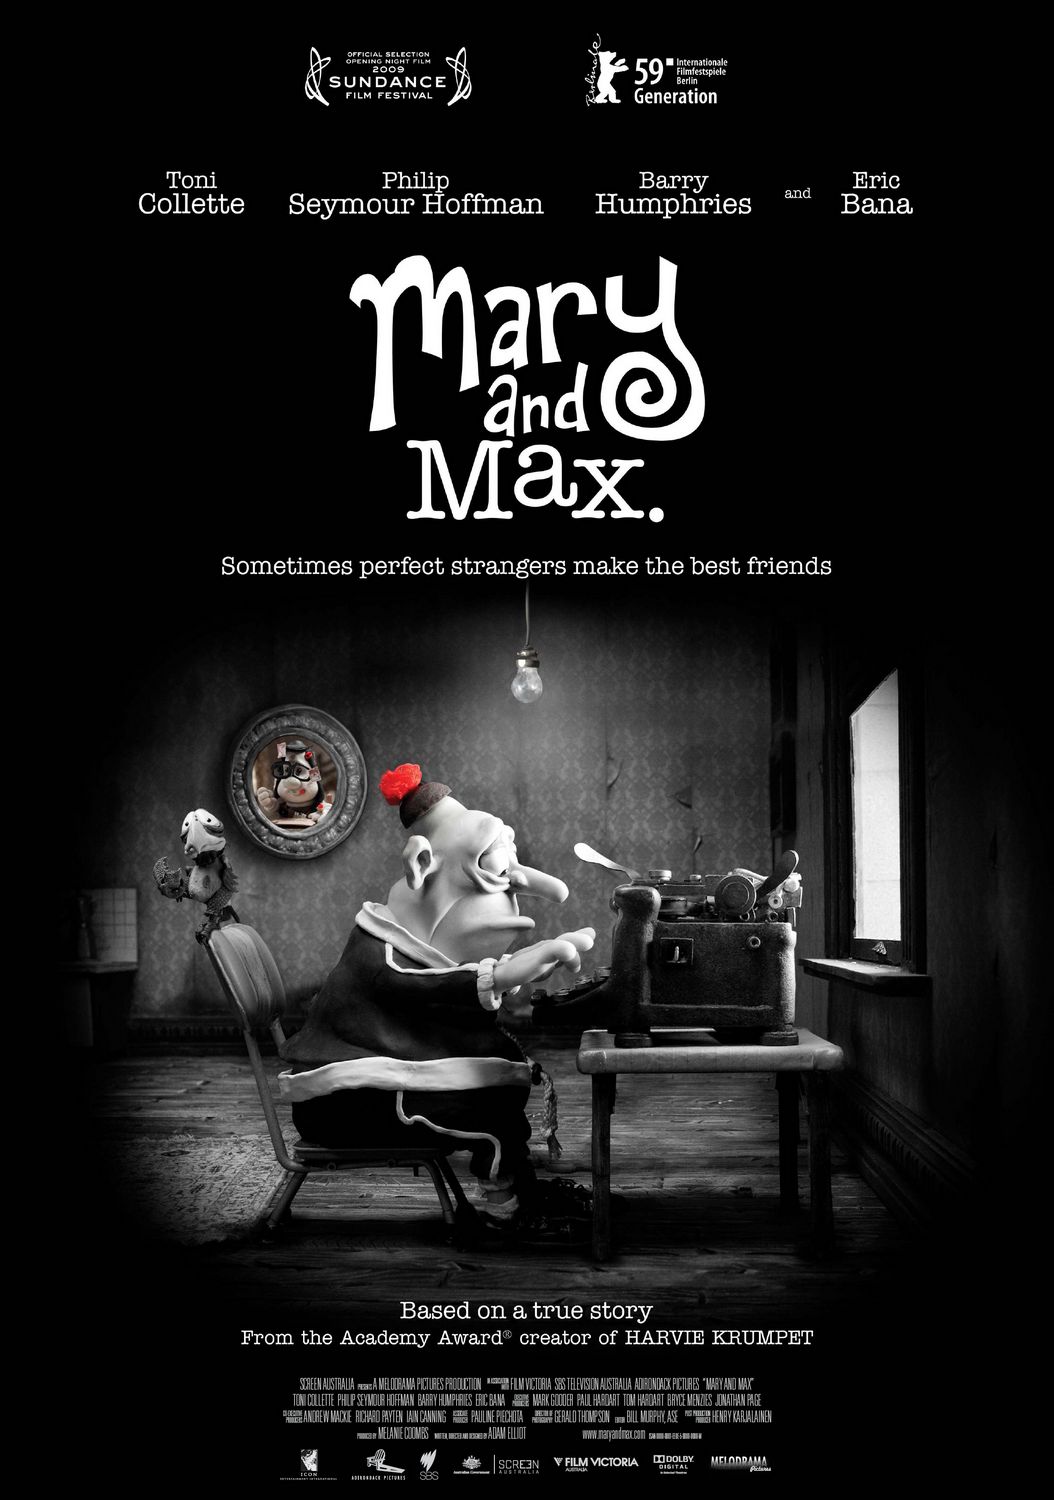 مري و مکس Mary and Max 2009 با دوبله فارسي